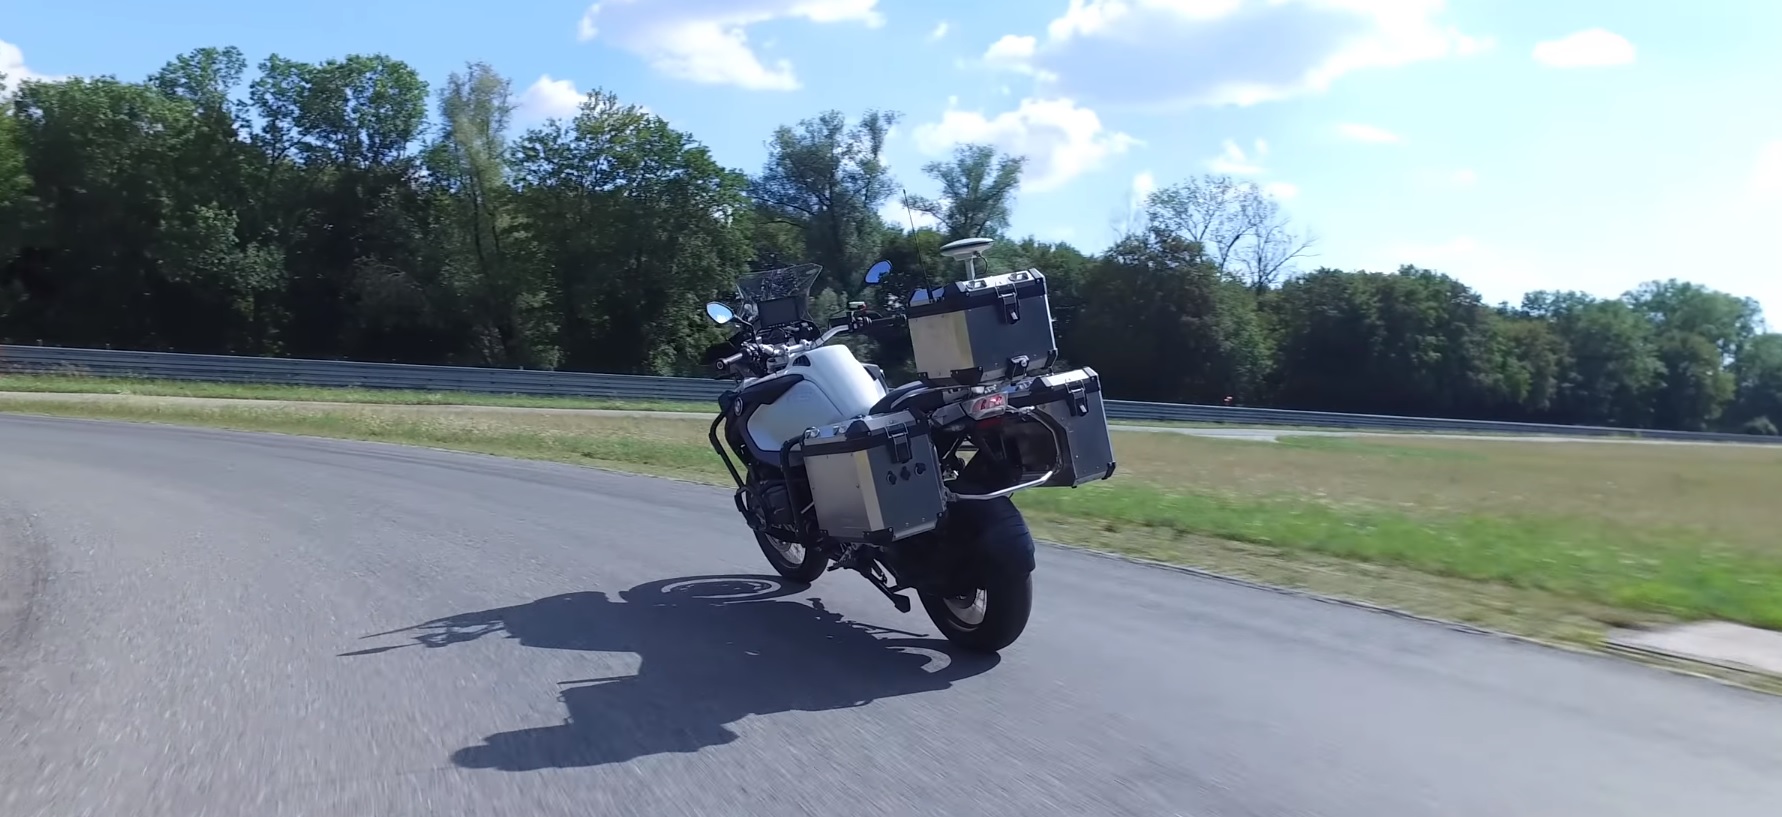 Im BMW haben unbemannte Motorrad für die Prüfung neuer Sicherheitssysteme